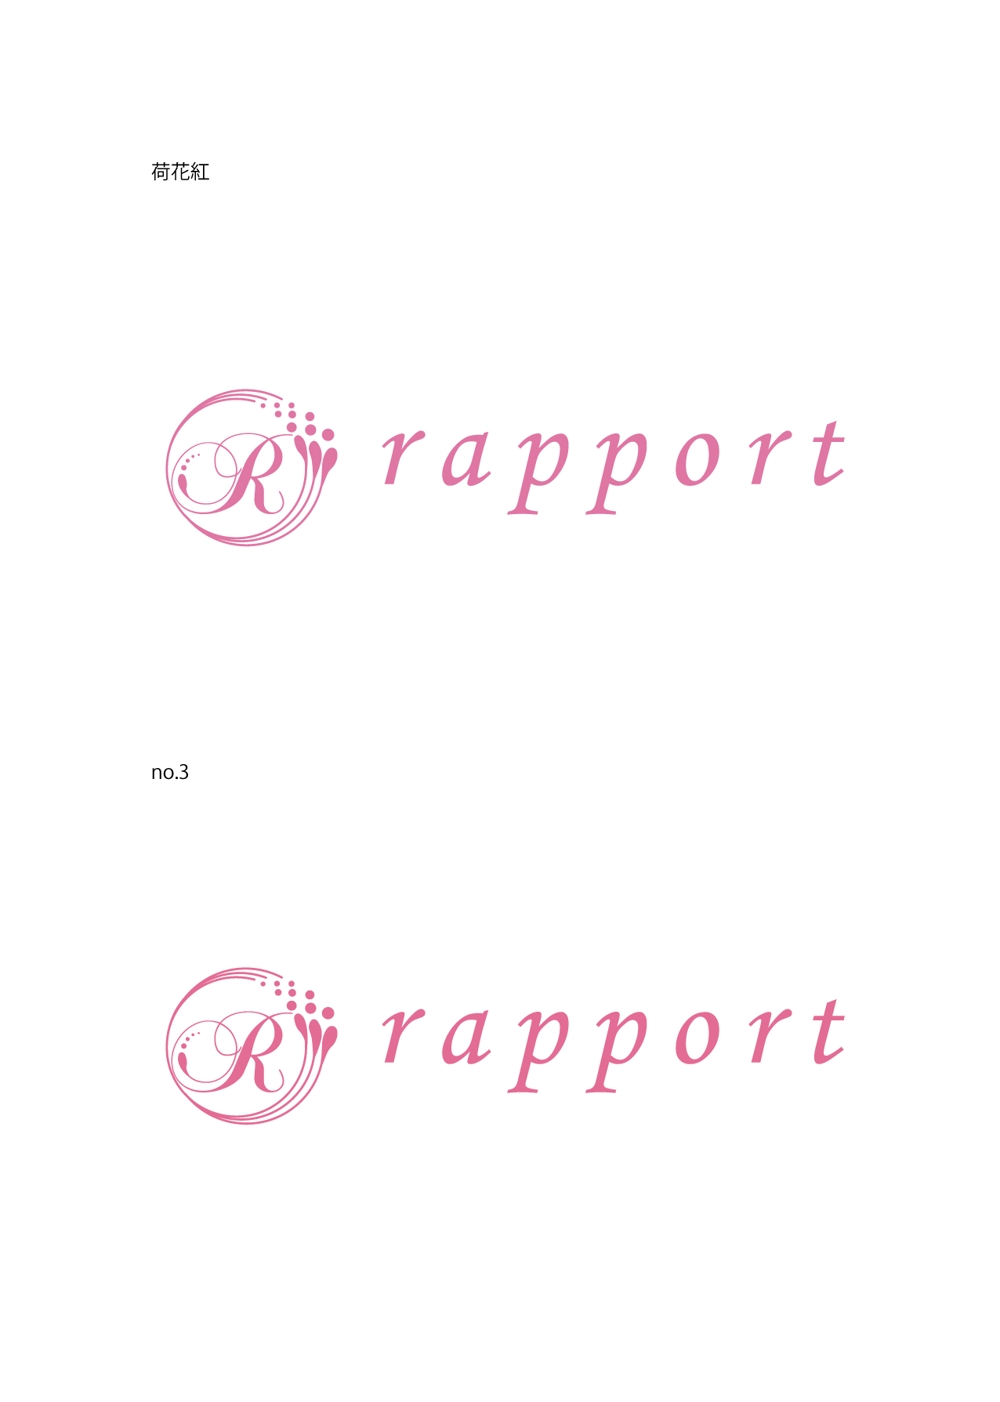 リンパドレナージュサロン「ラポーレ」のロゴ